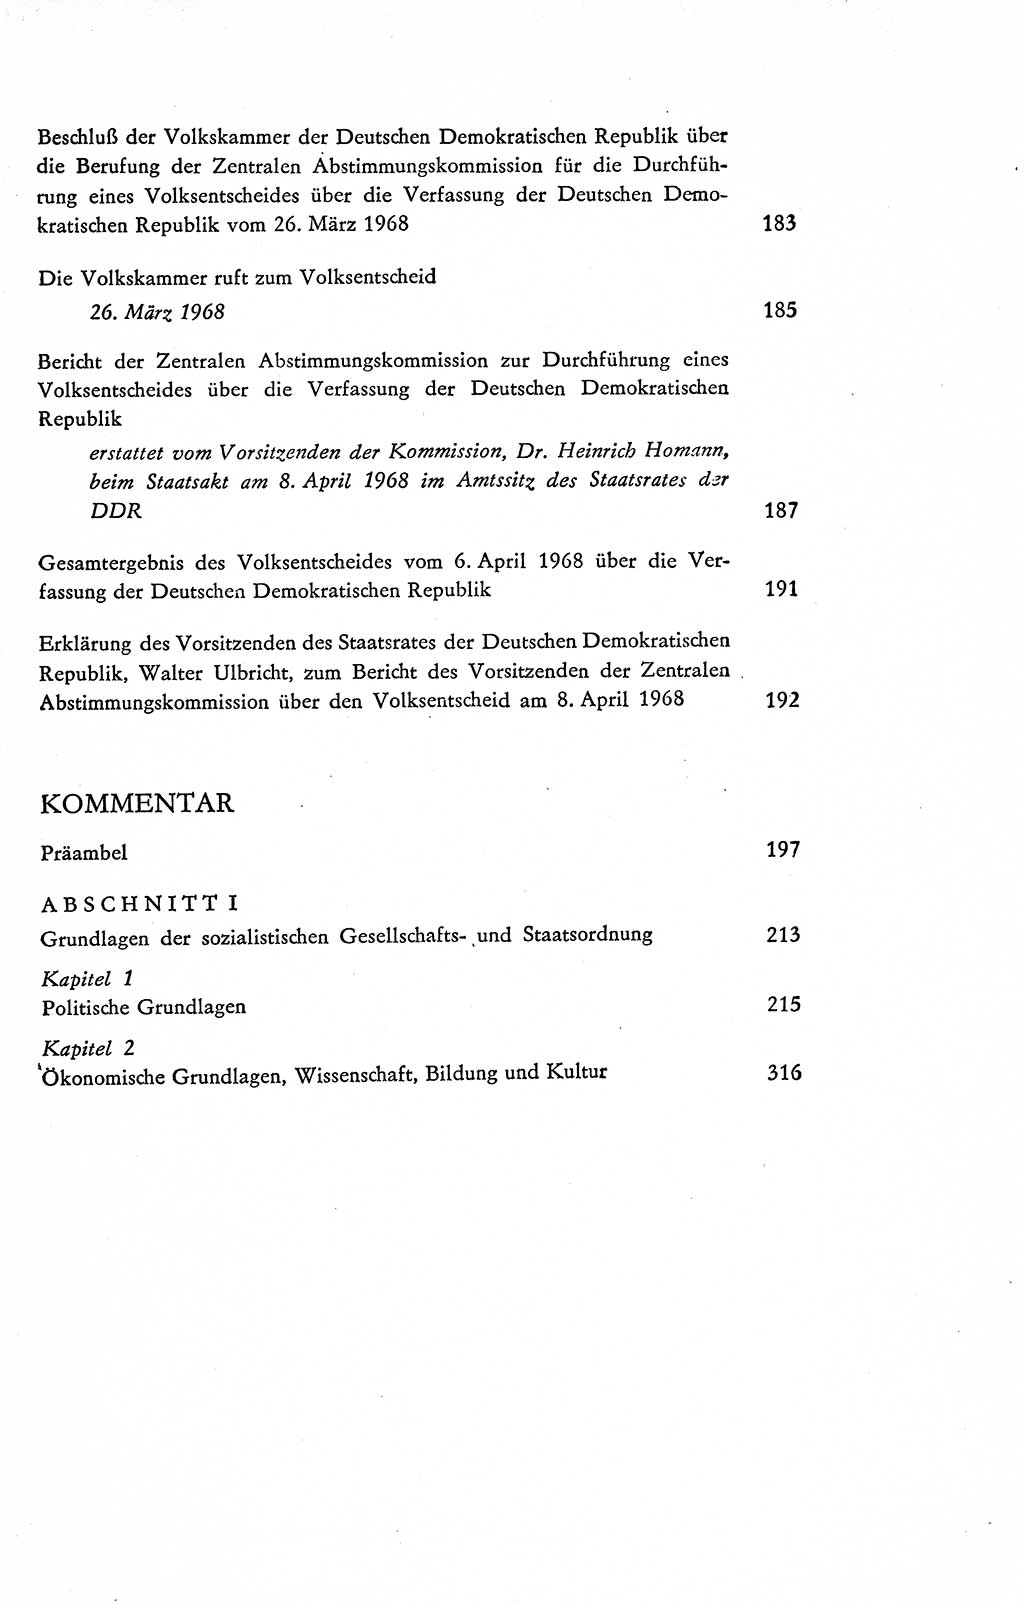 Verfassung der Deutschen Demokratischen Republik (DDR), Dokumente, Kommentar 1969, Band 2, Seite 554 (Verf. DDR Dok. Komm. 1969, Bd. 2, S. 554)